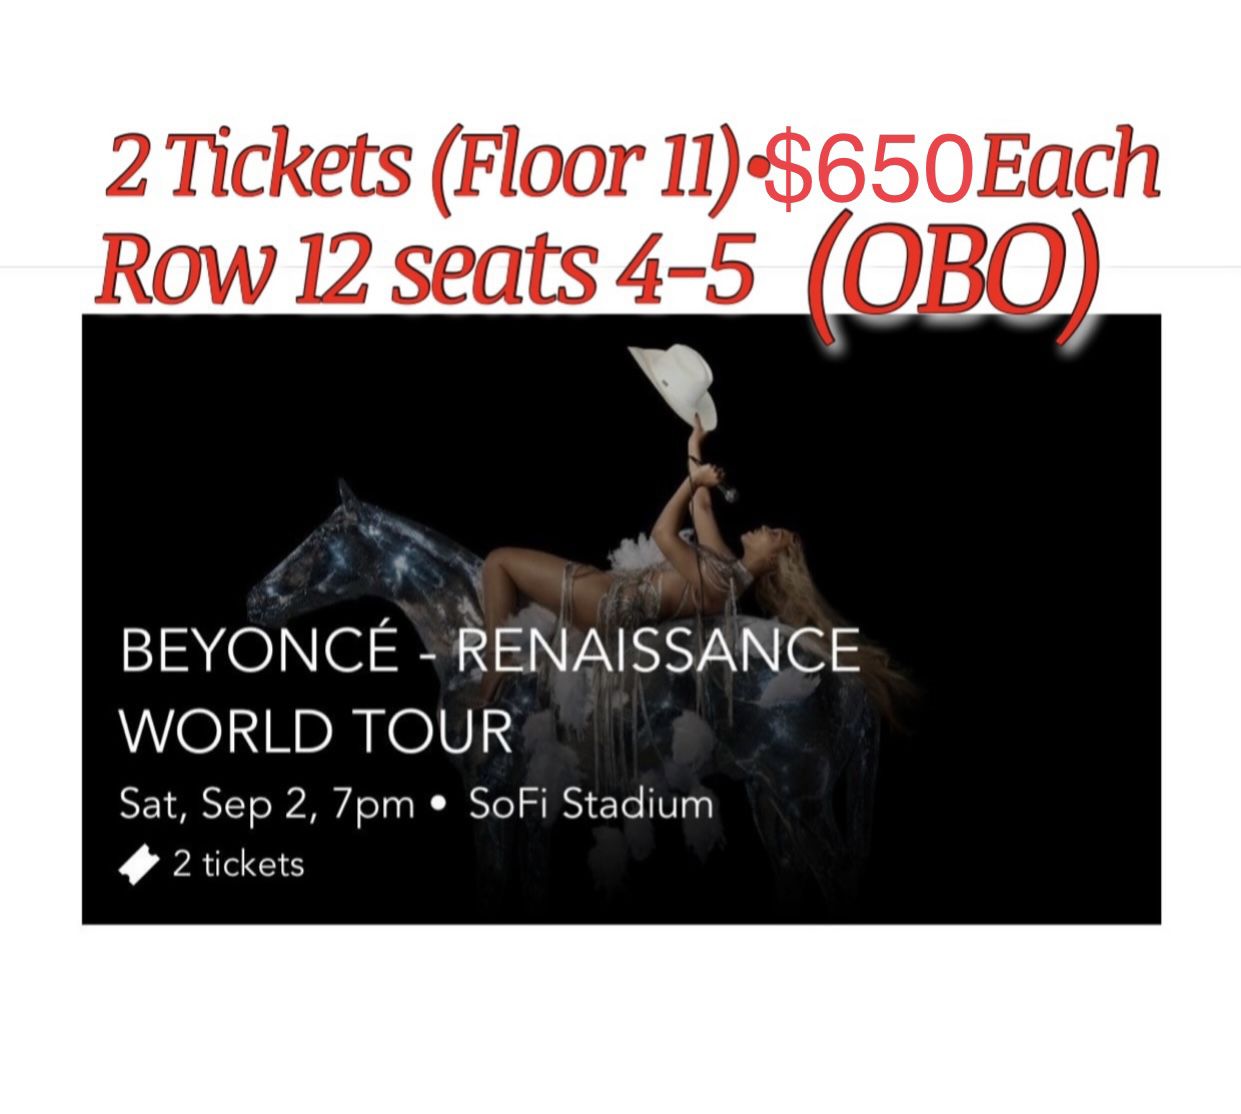 Beyoncé Renaissance Tour (obo)